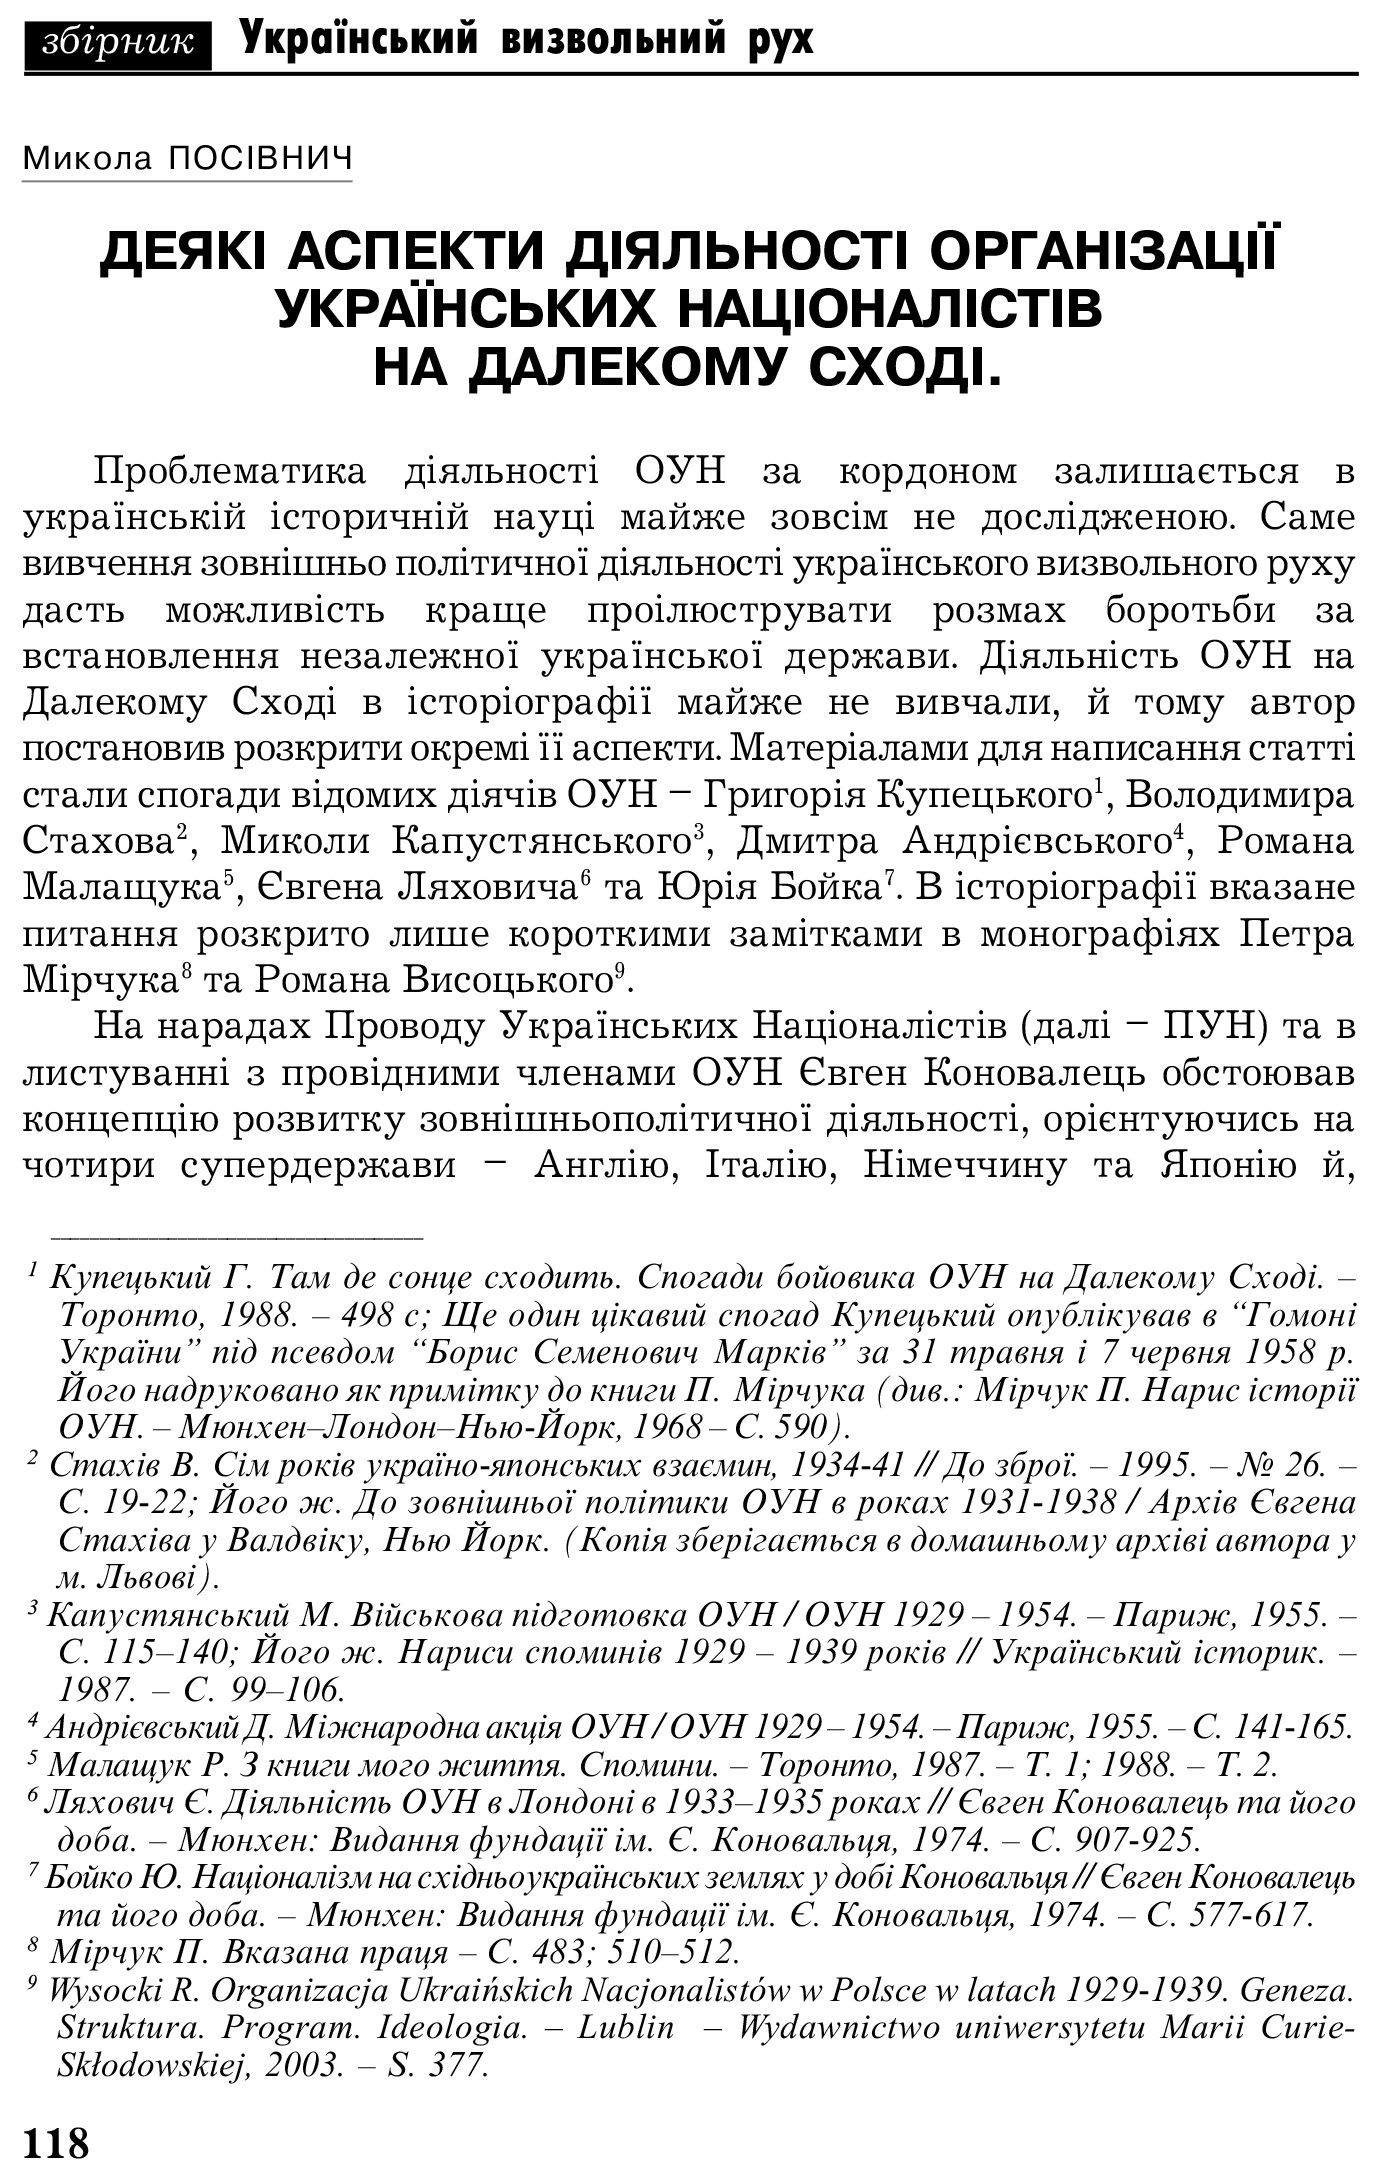 Український визвольний рух №5, ст. 118 - 130